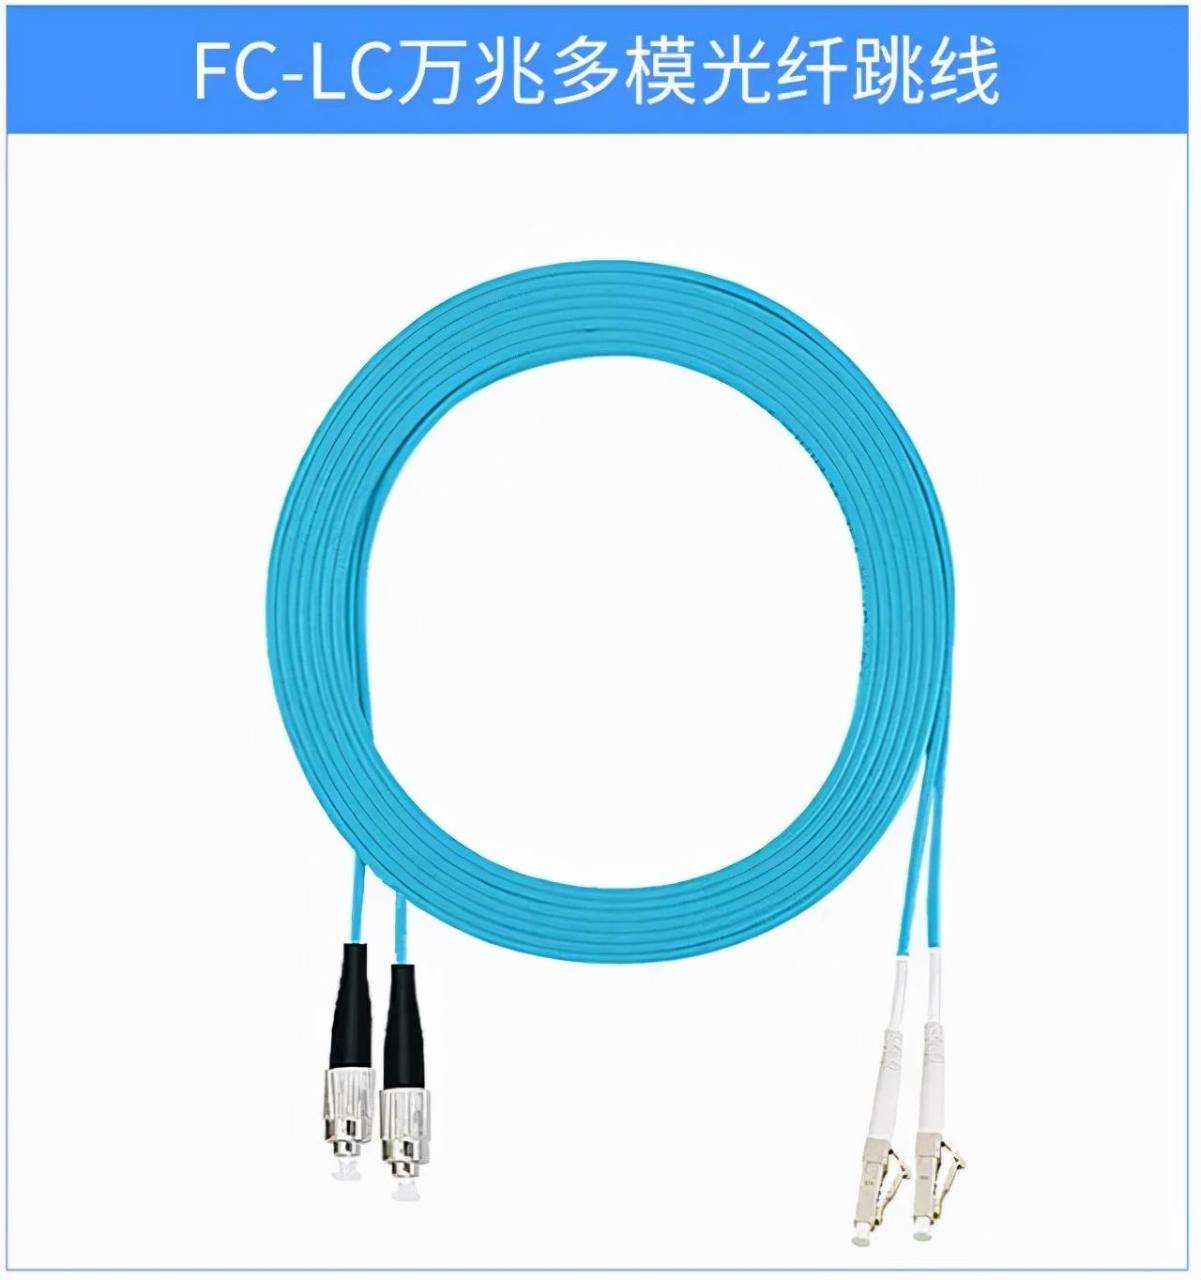 详细讲解光缆、终端盒、跳线、尾纤以及光纤各种接口_连接器